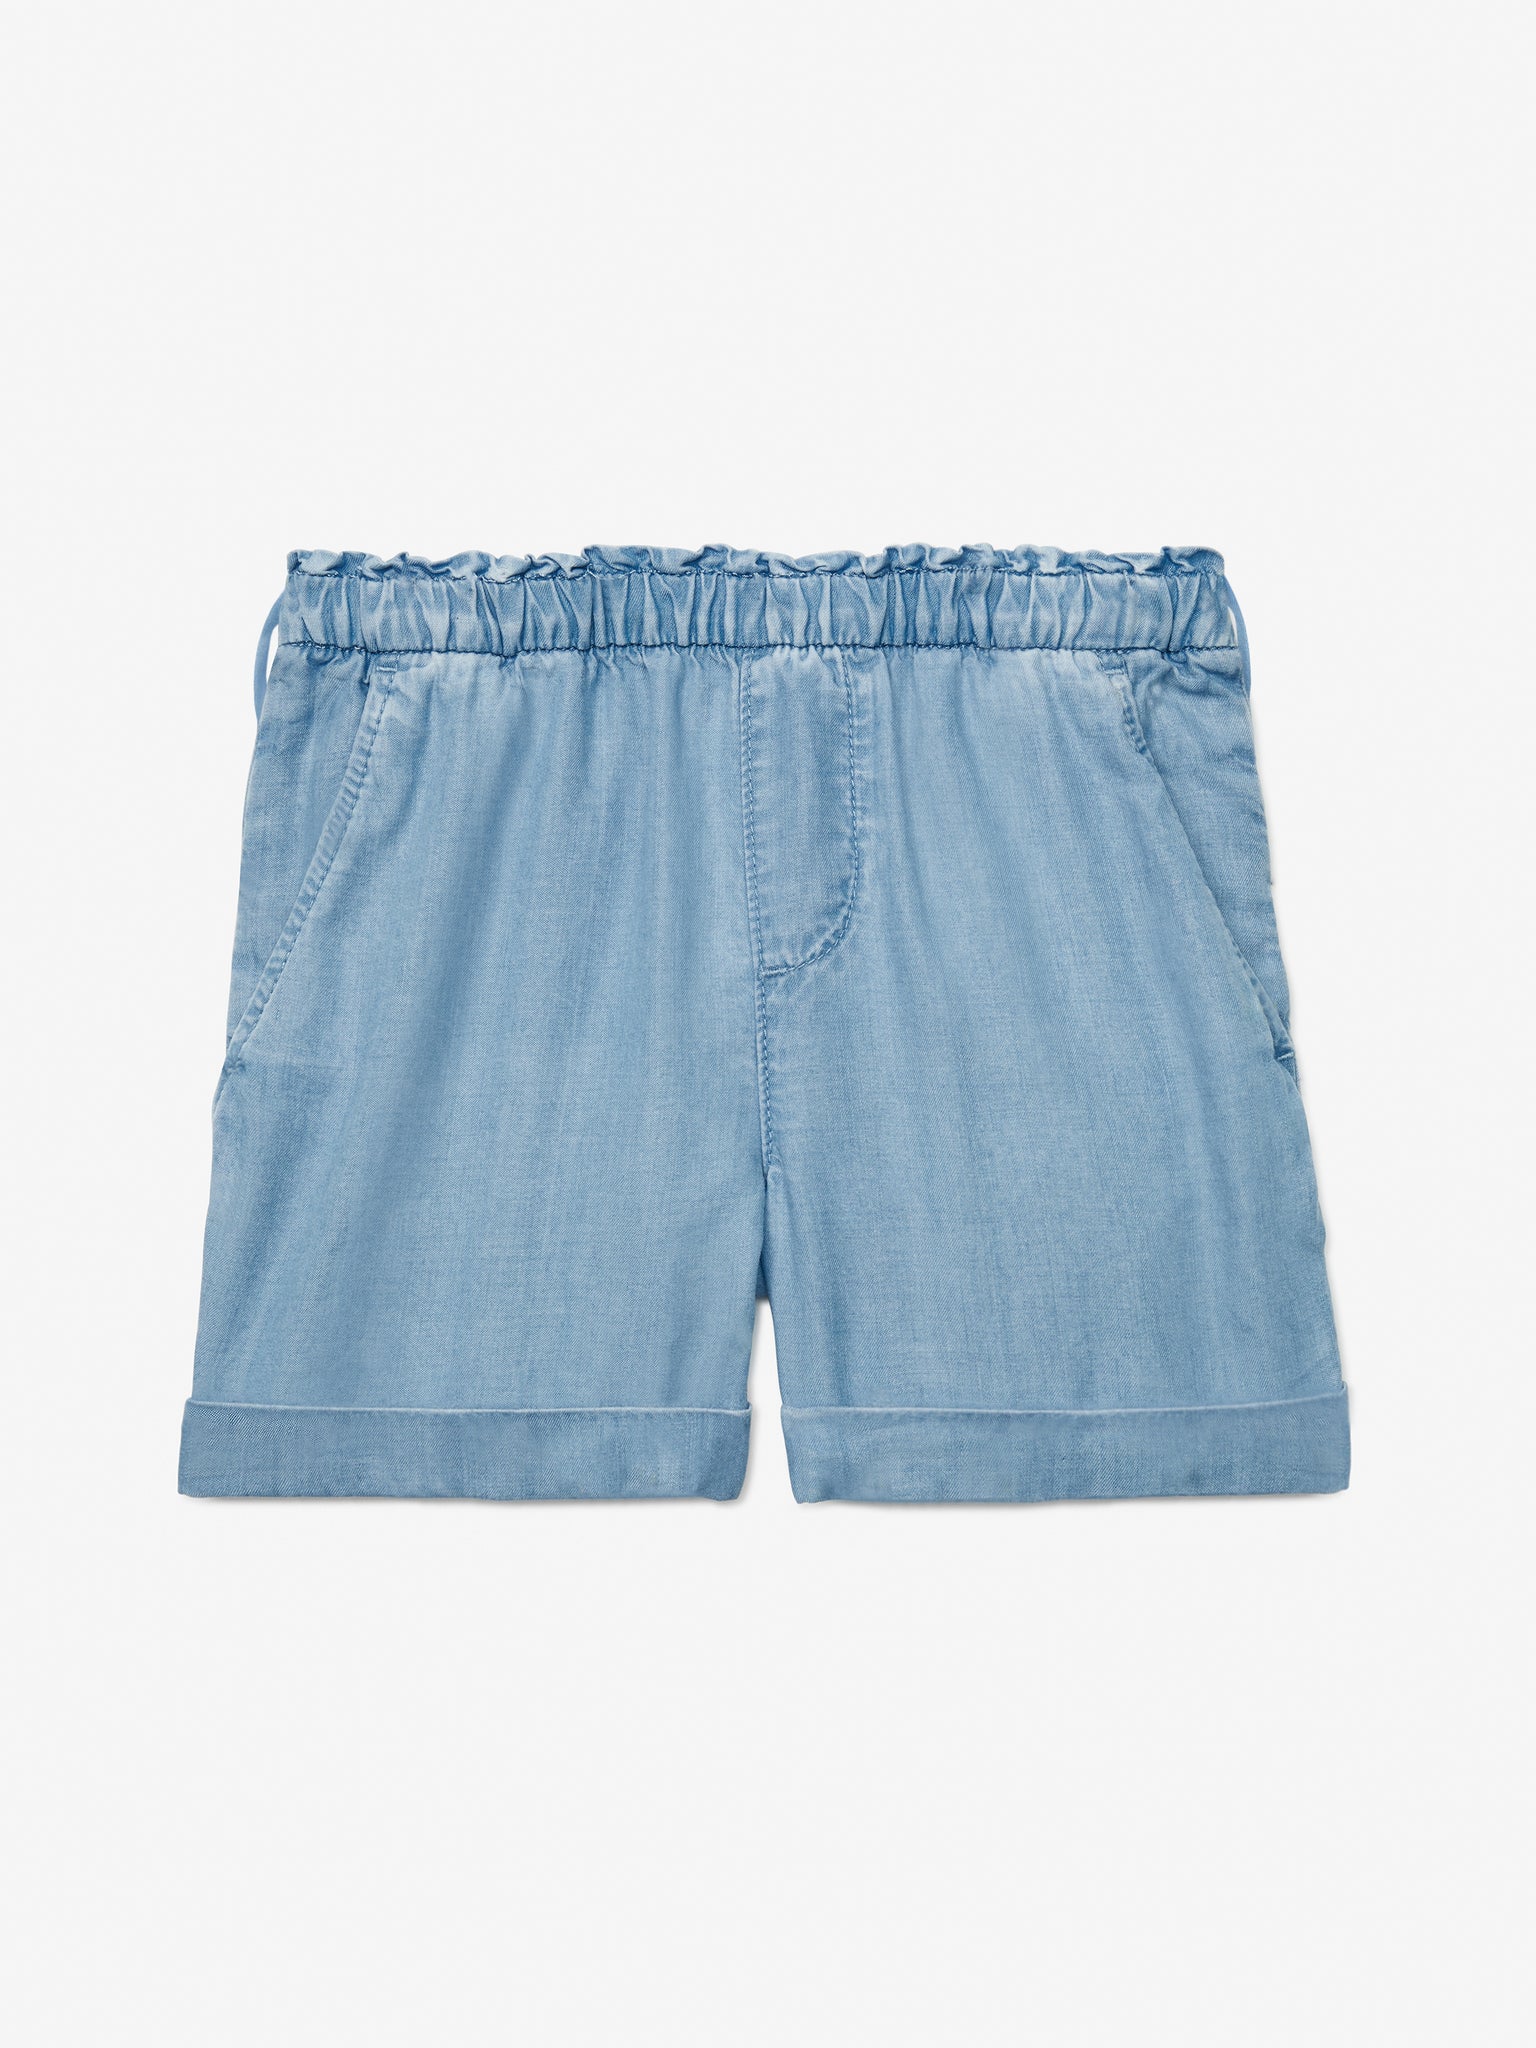 Hazelnut Shorts (Girls) - Chambray